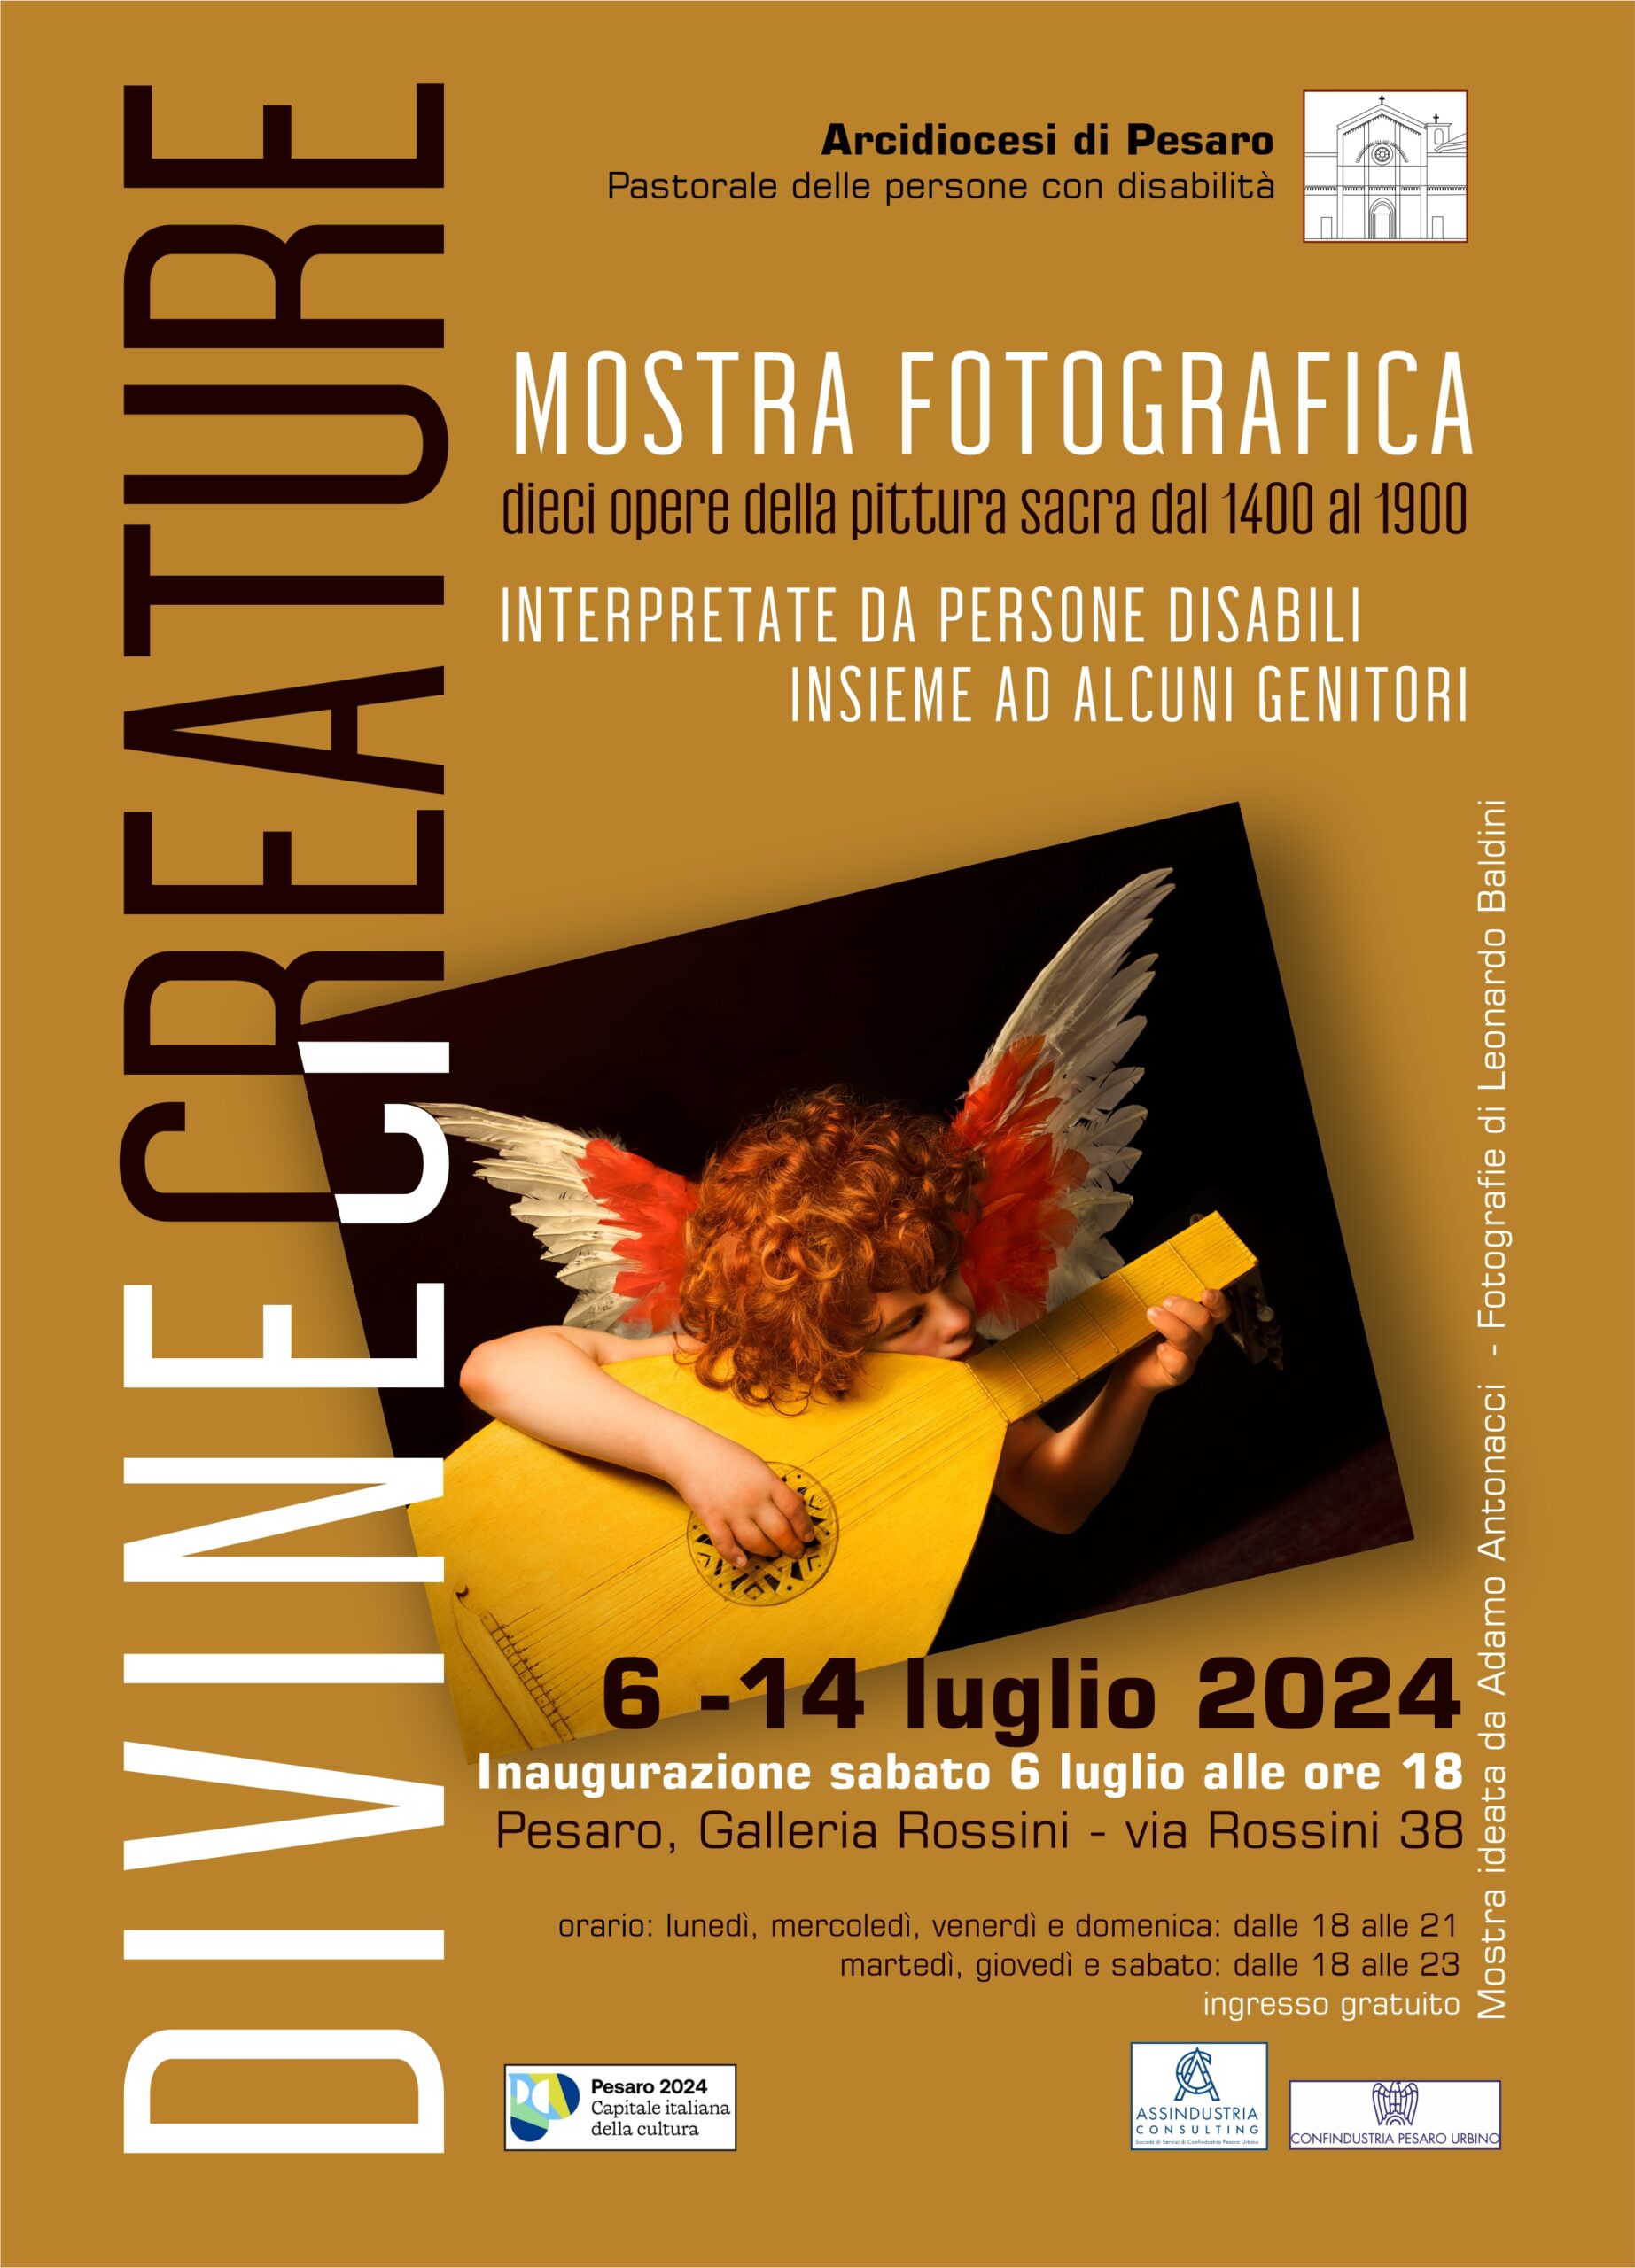 PASTORALE DELLE PERSONE CON DISABILITA’ : MOSTRA FOTOGRAFICA “DIVINE CREATURE” – Galleria Rossini 6 – 14 luglio 2024